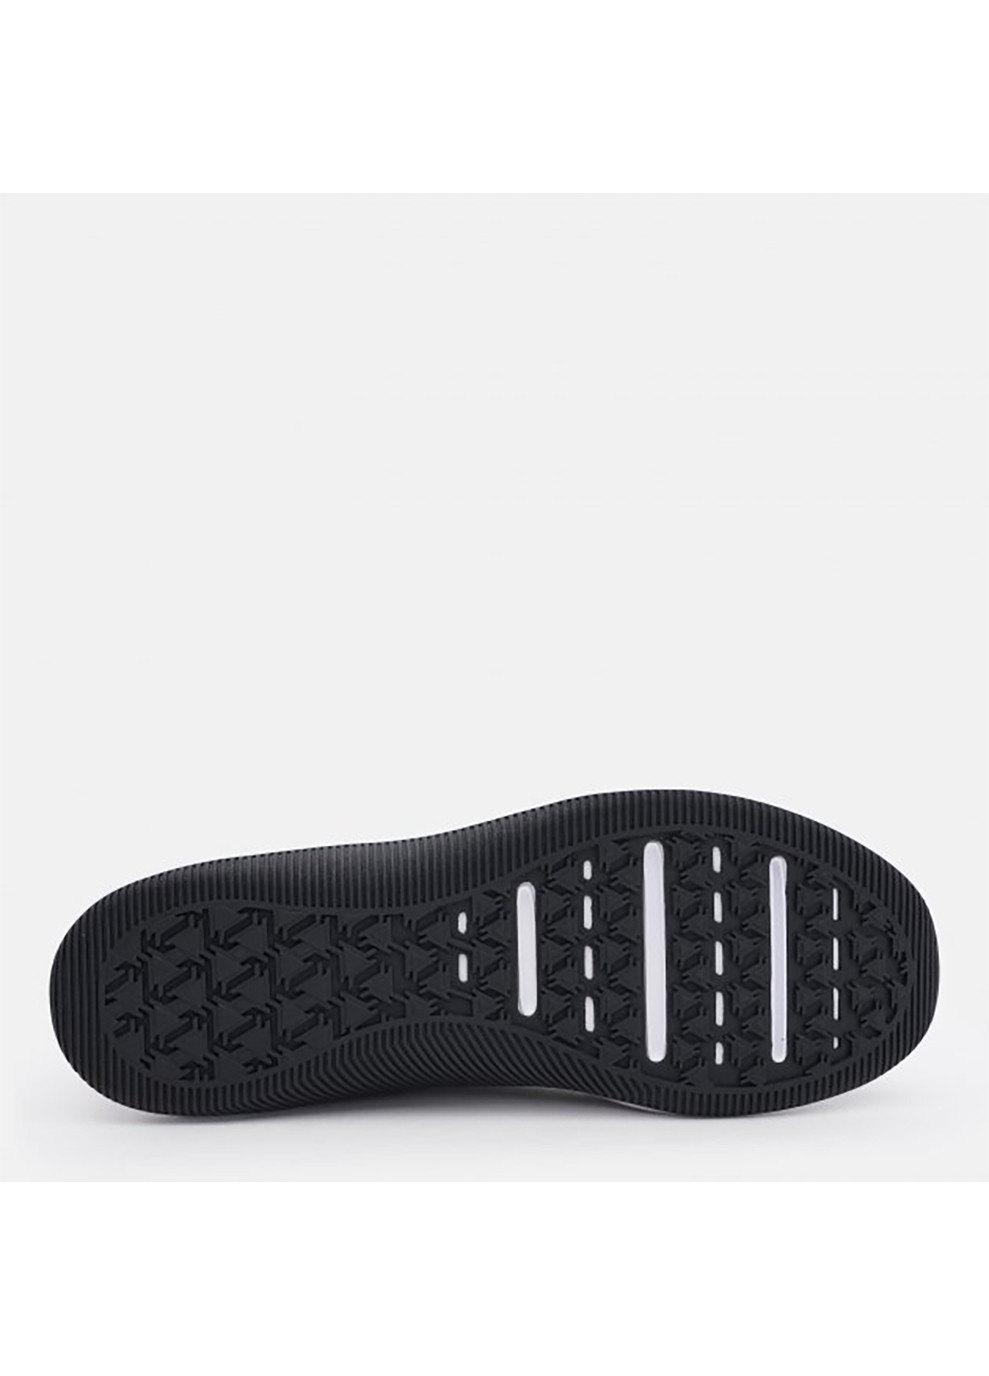 Білі Осінні чоловічі кросівки mc trainer 2 чорний Nike